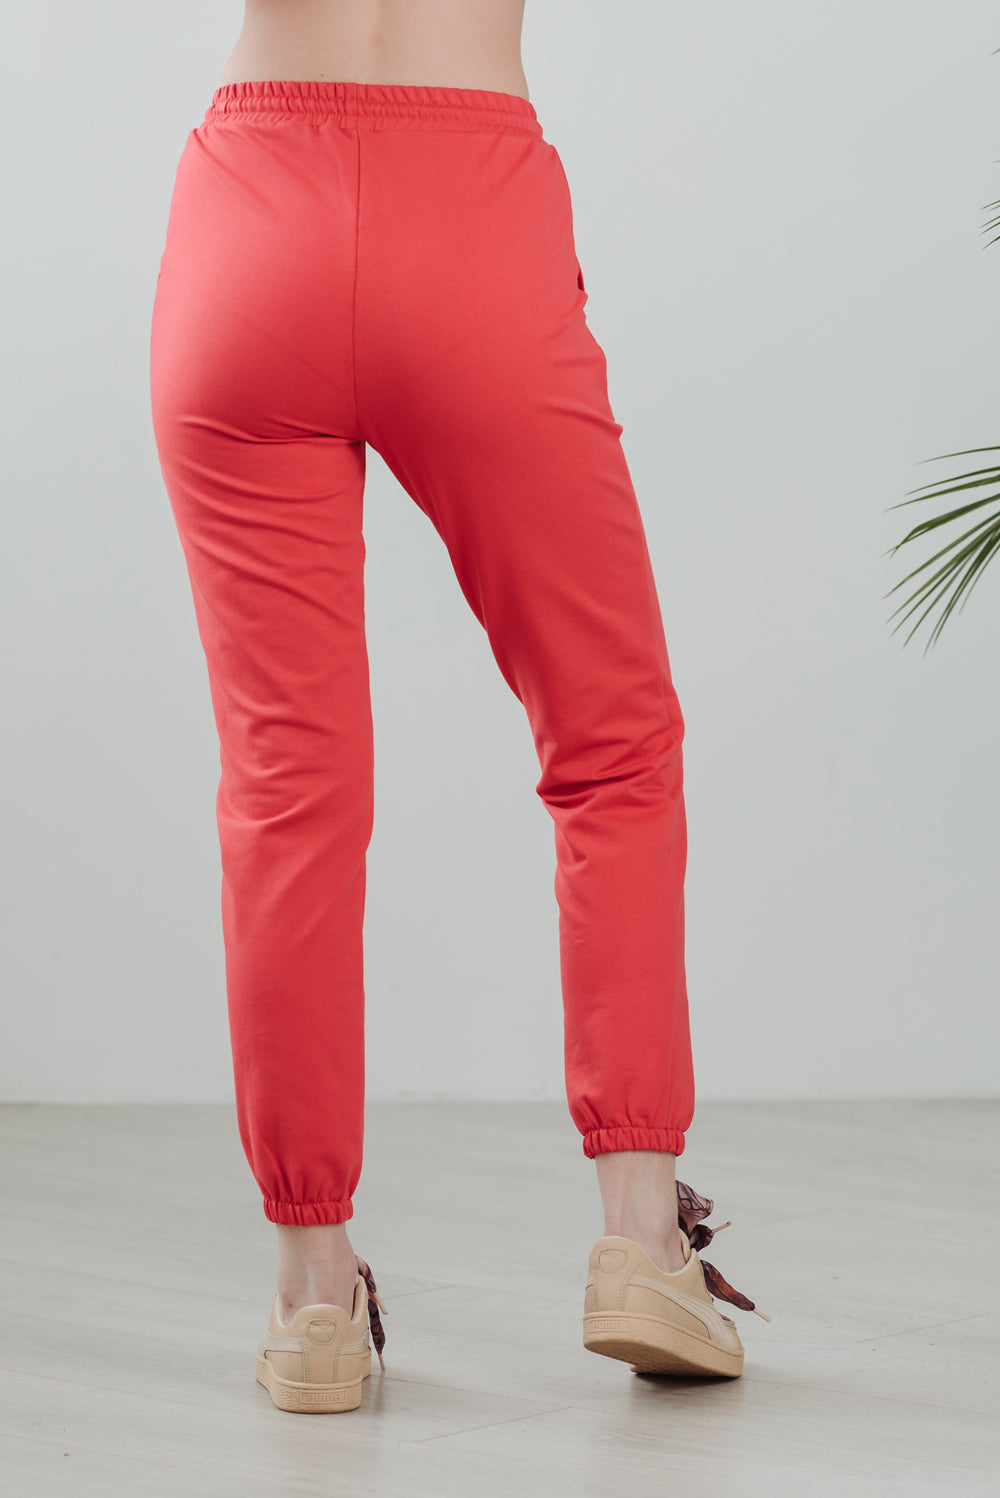 AZURI Pantalon taille haute décontracté couleur corail Jogging Femme